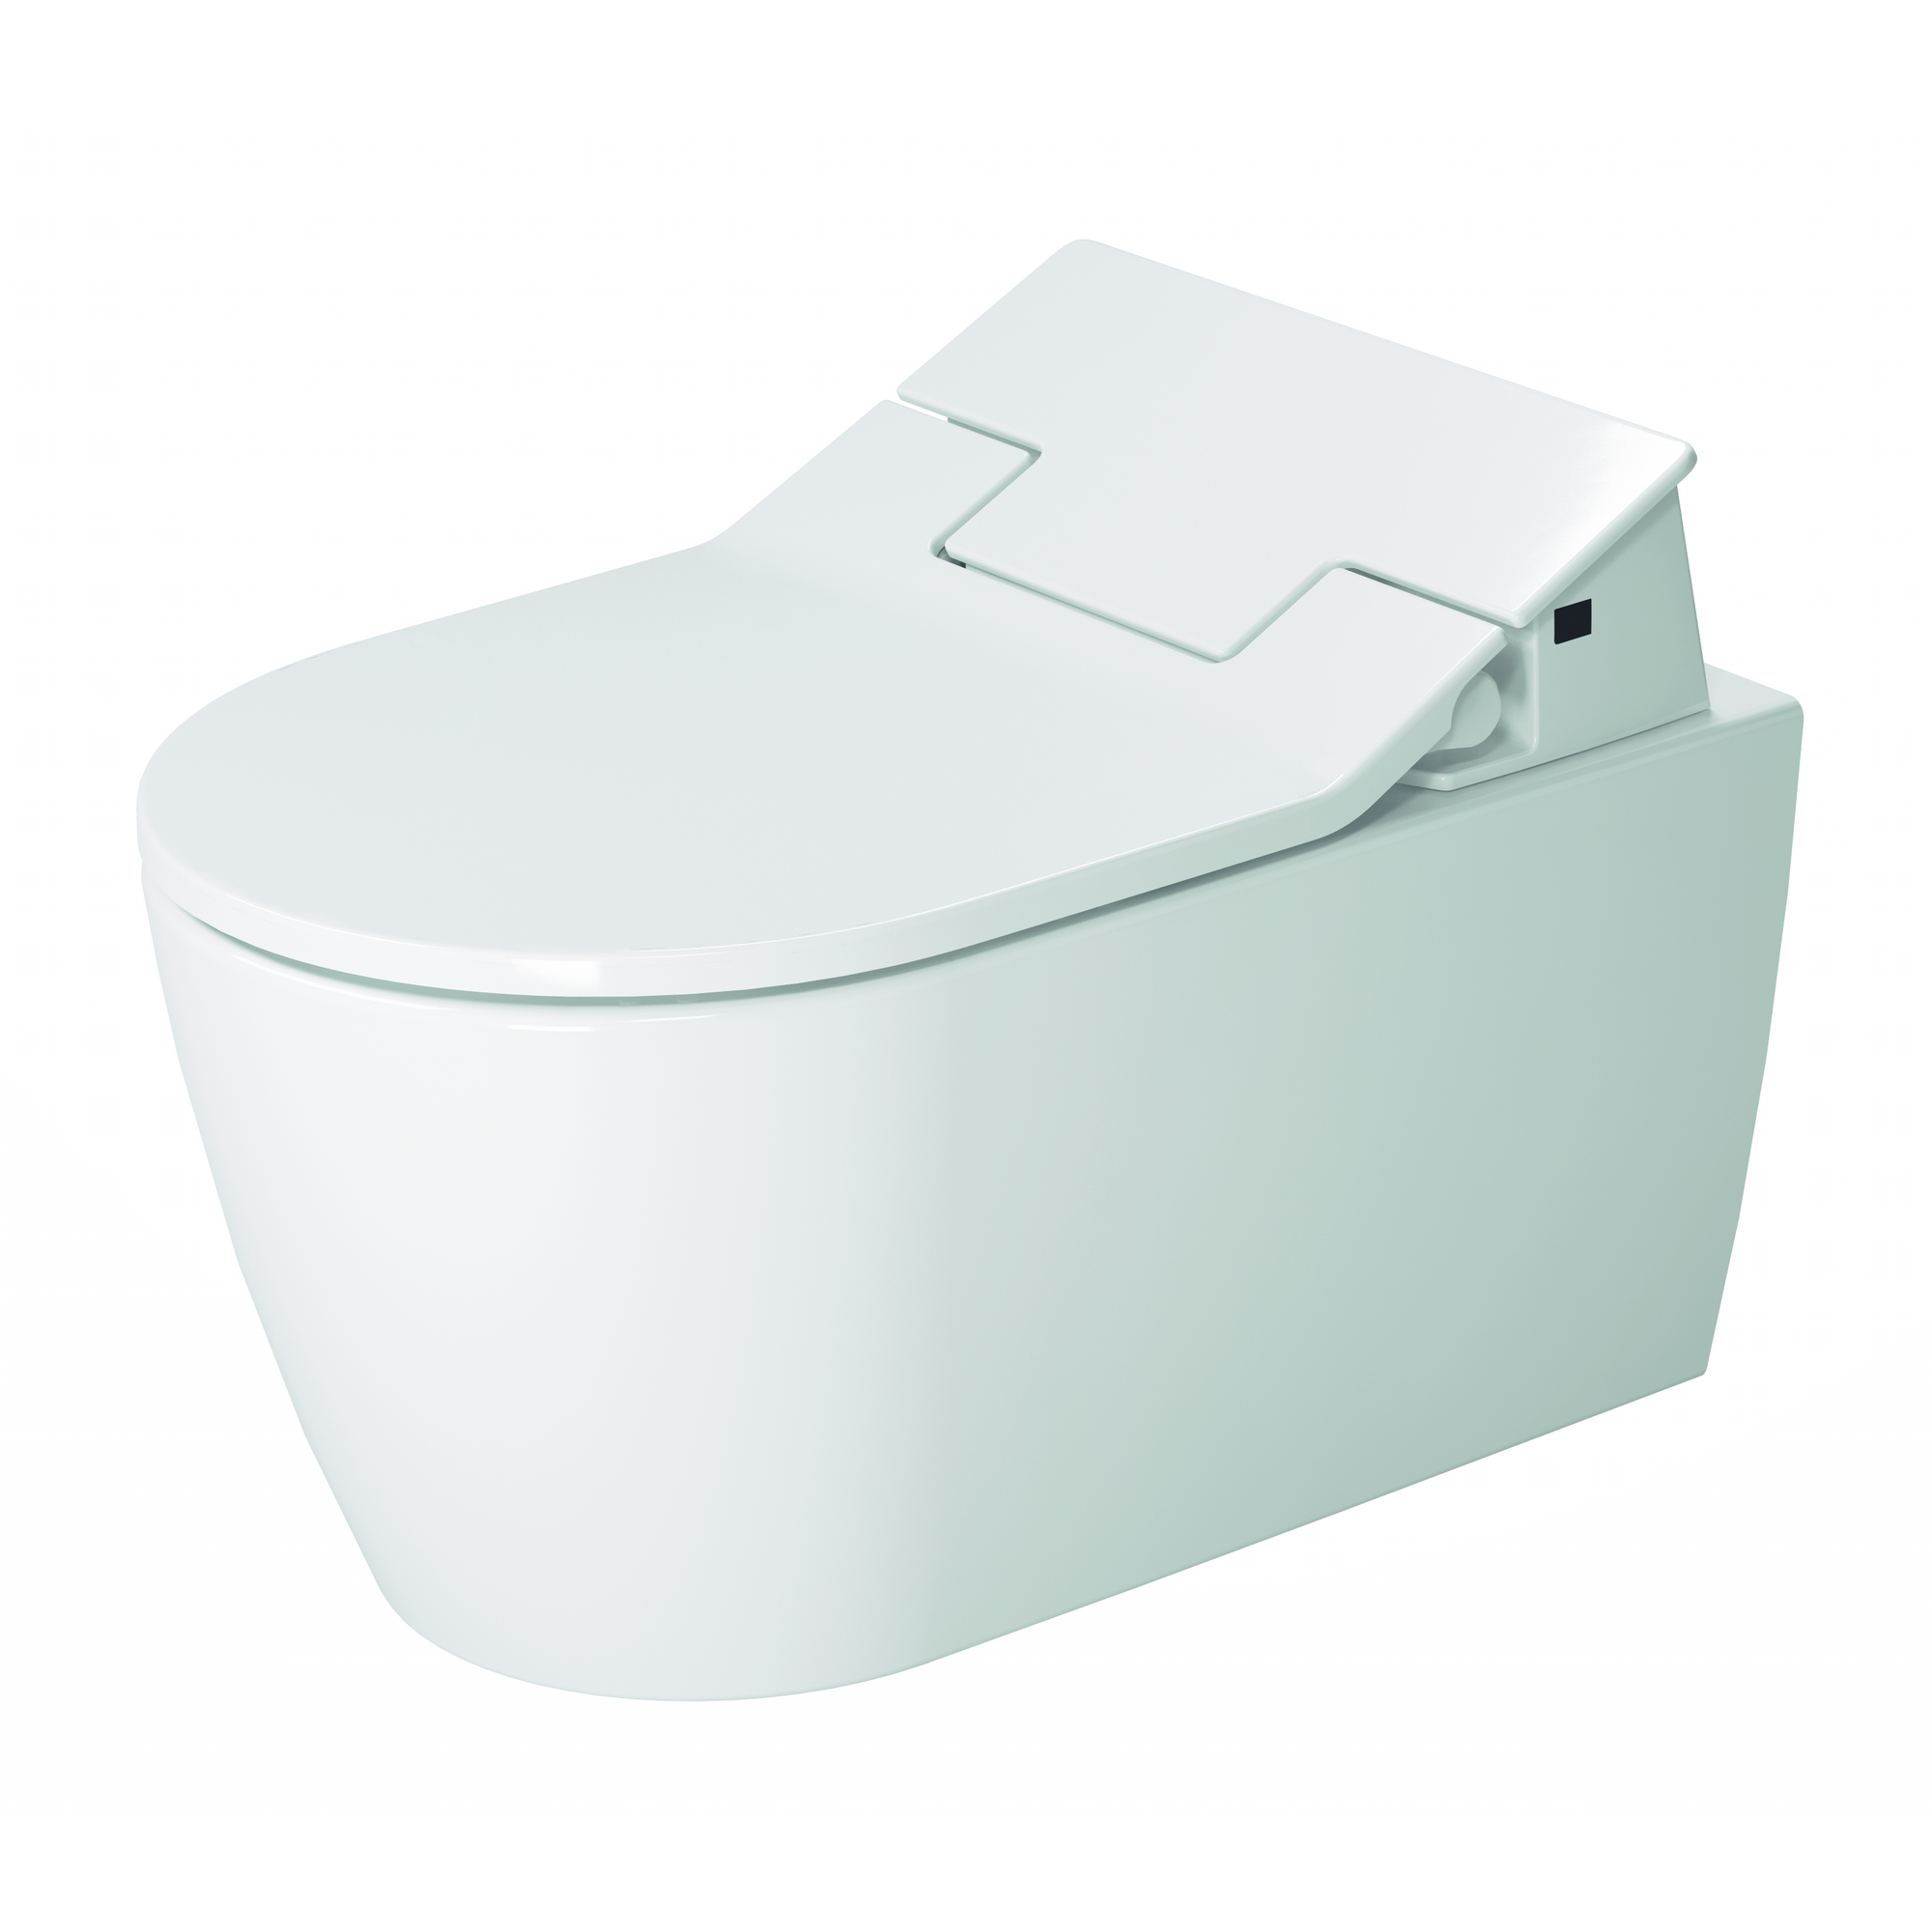 Dusch-WC 'Senso Wash Slim' spülrandlos weiß 37 x 41 x 57 cm + product video